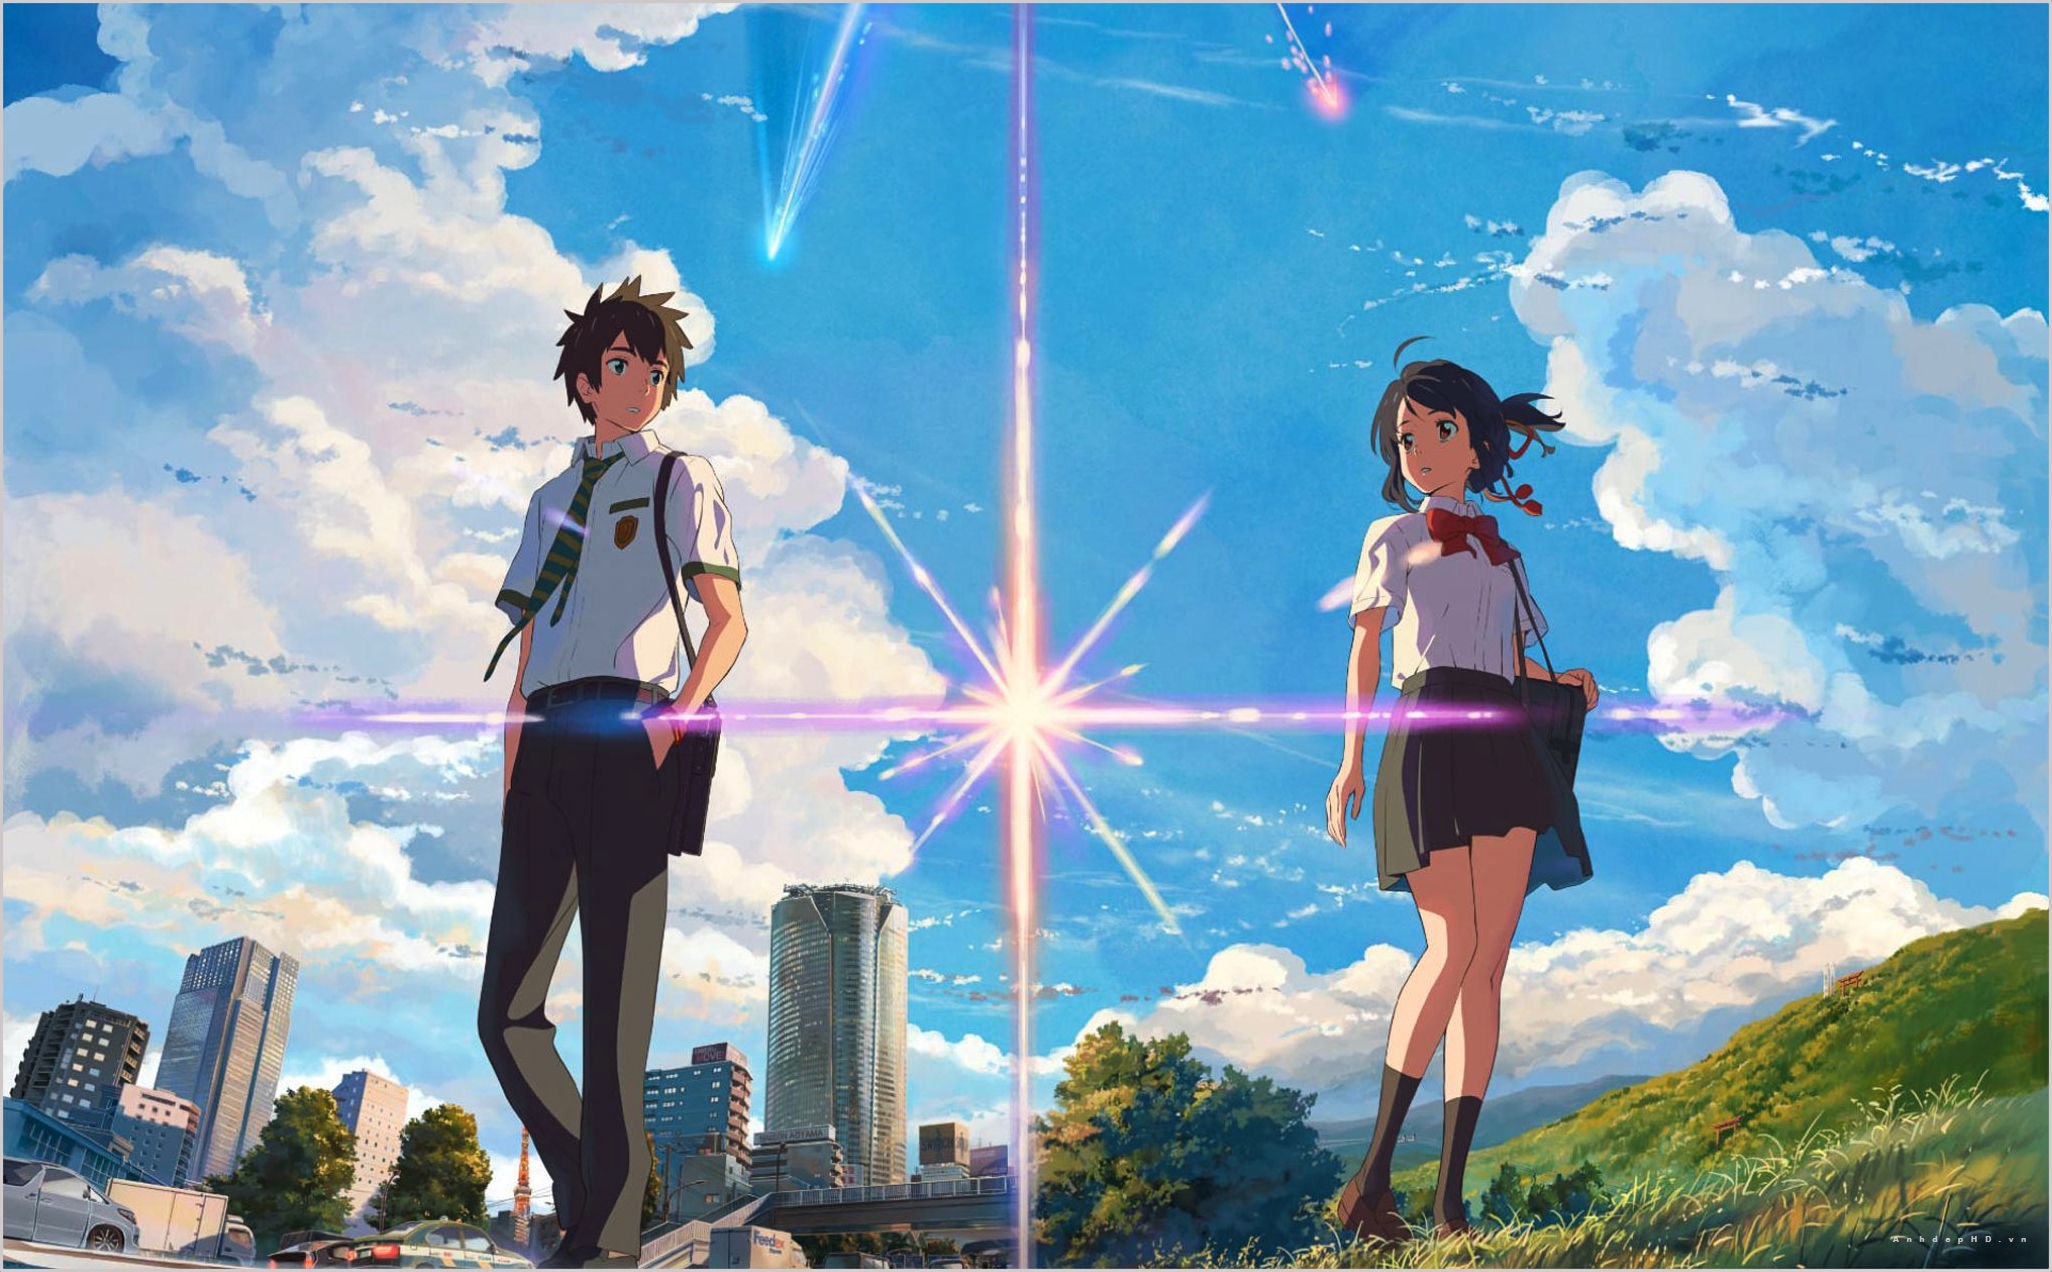 Hình Nền Anime Full HD Ngầu Dành Cho Máy Tính  HacoLED